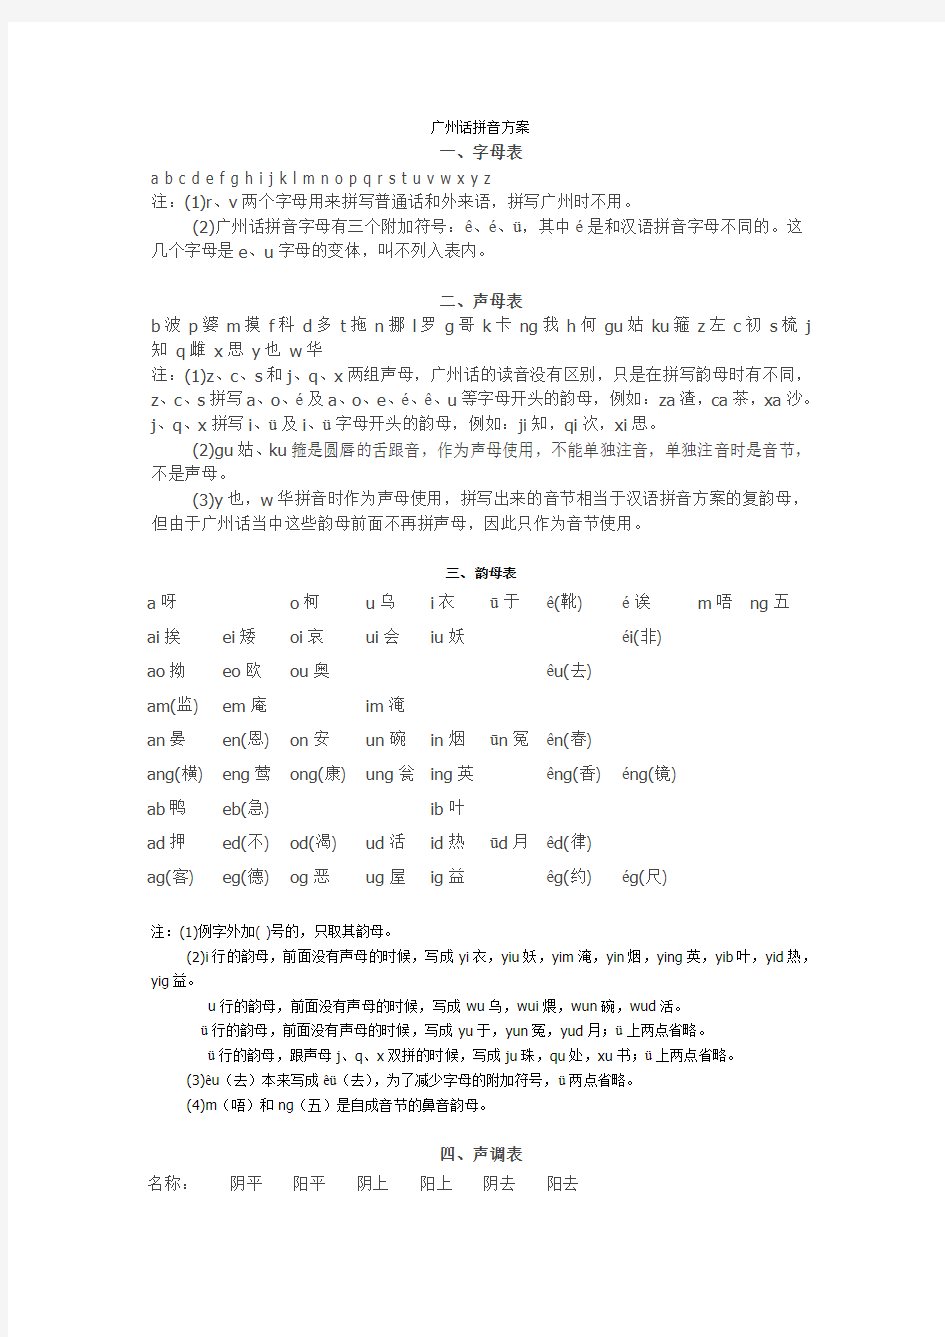 广州话、粤语拼音方案